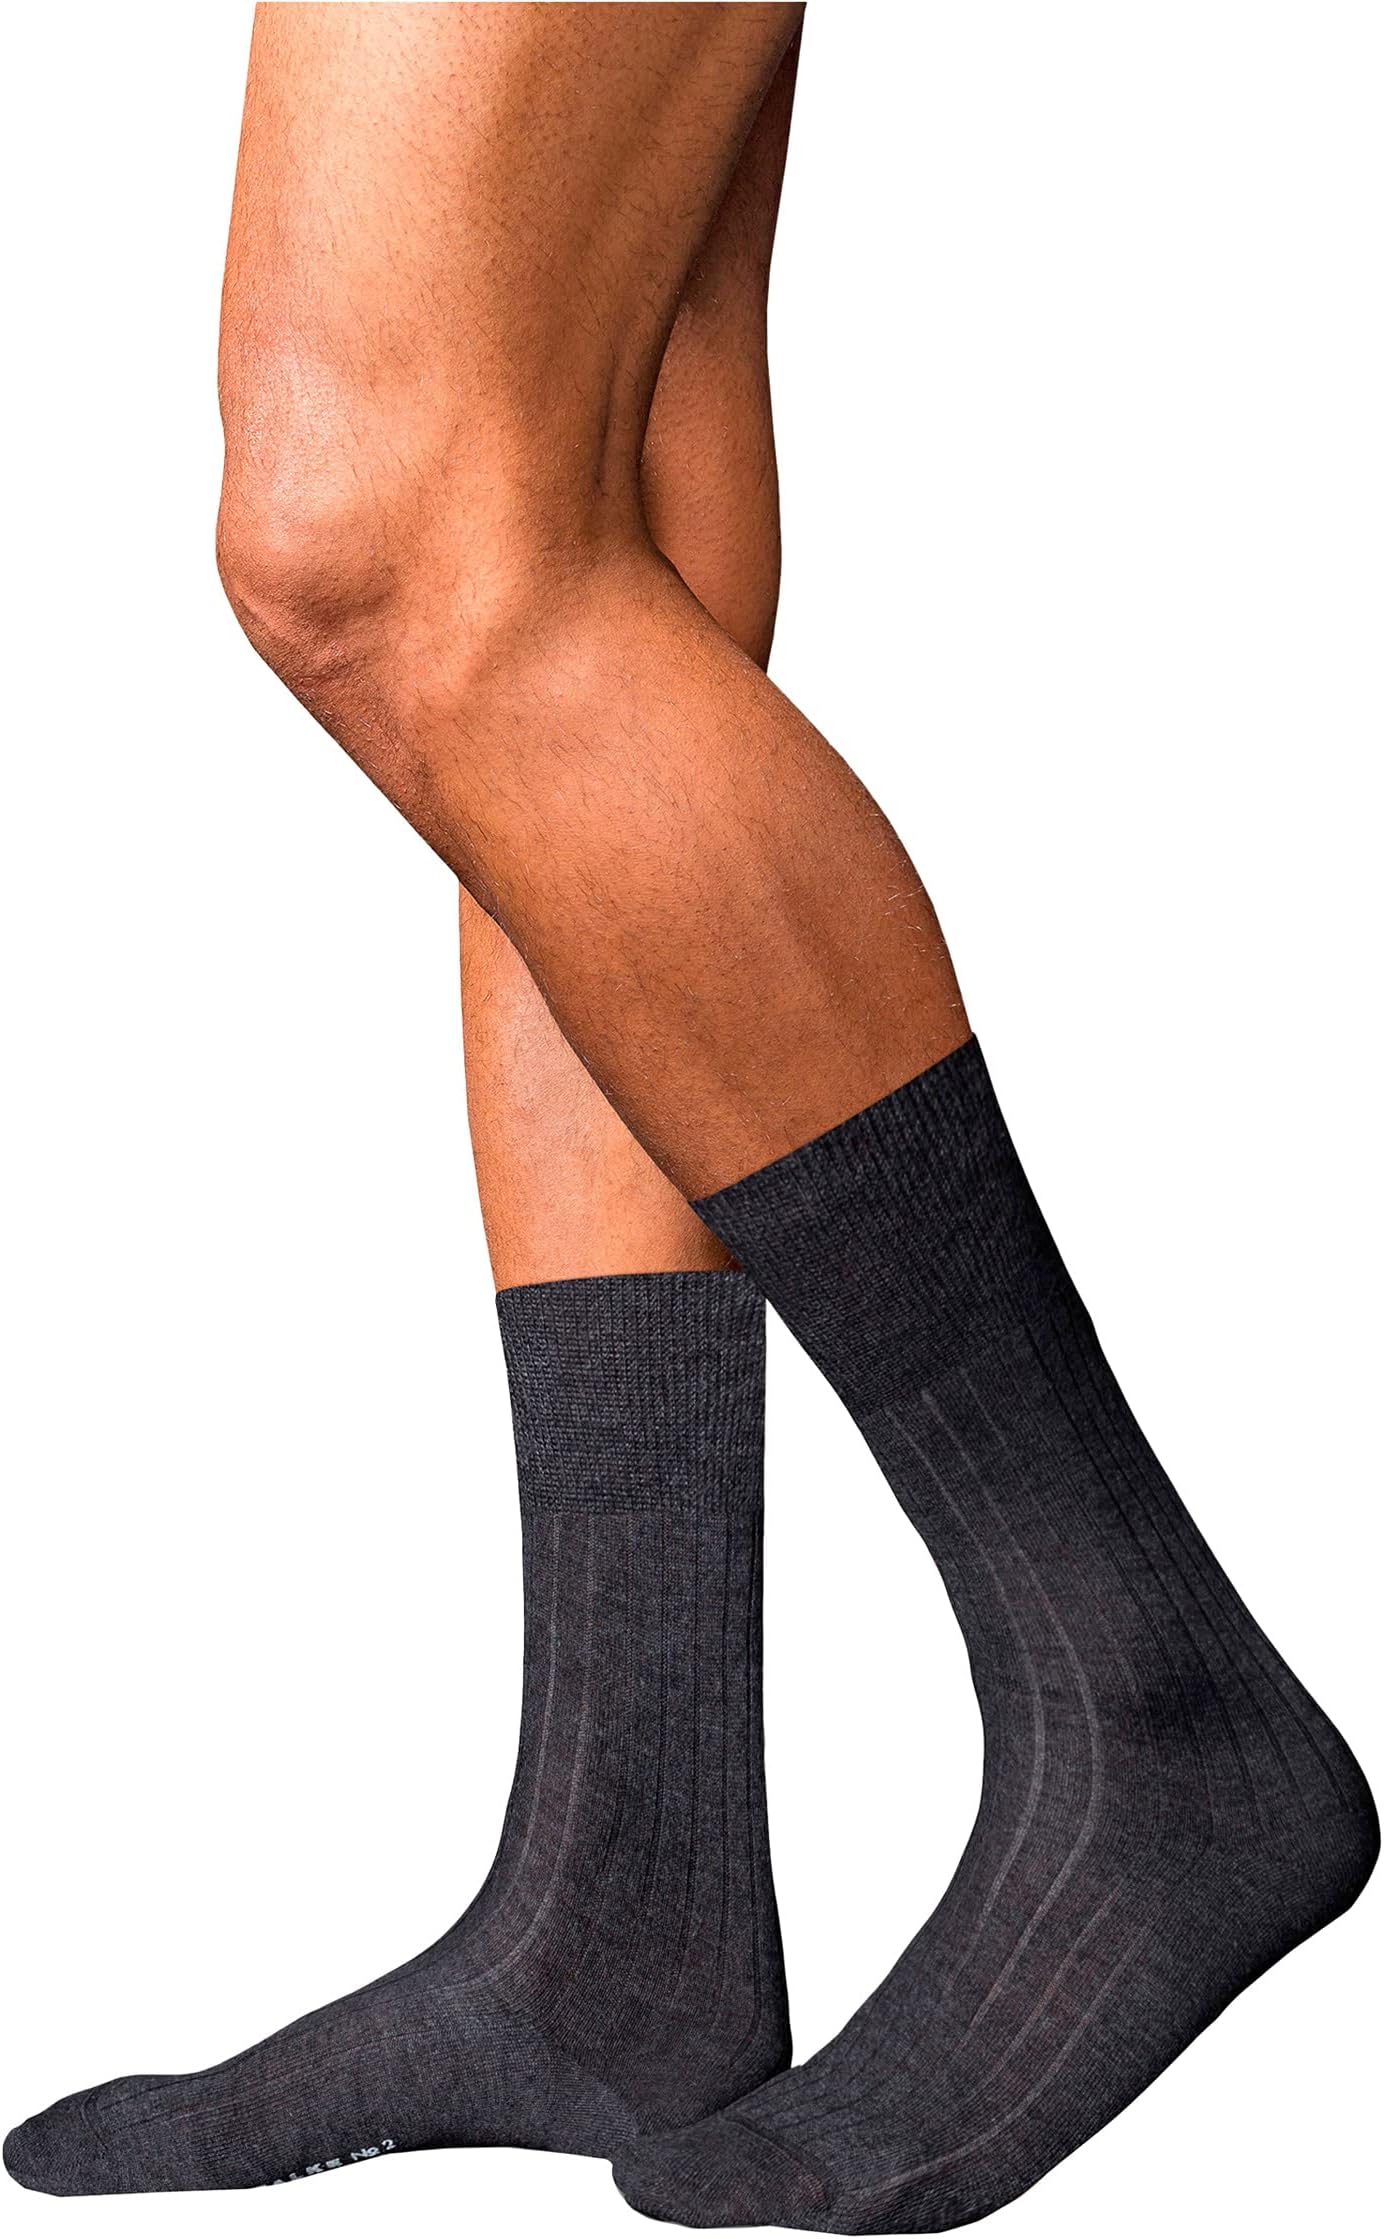 Кашемировые носки № 2 Falke, цвет Anthracite